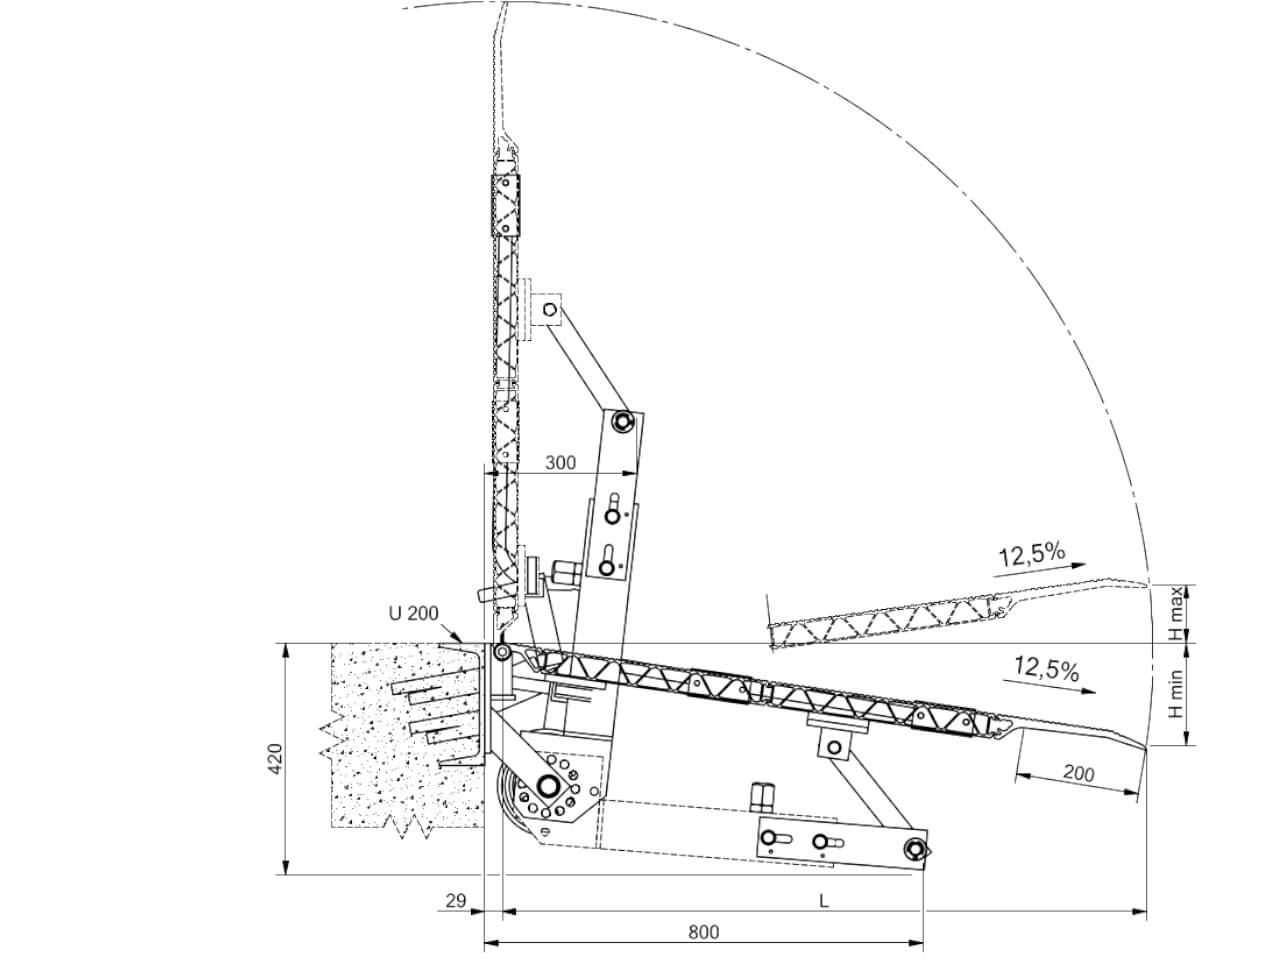 zeichnung einer stationaeren skb ueberladebruecke mit federhebesystem